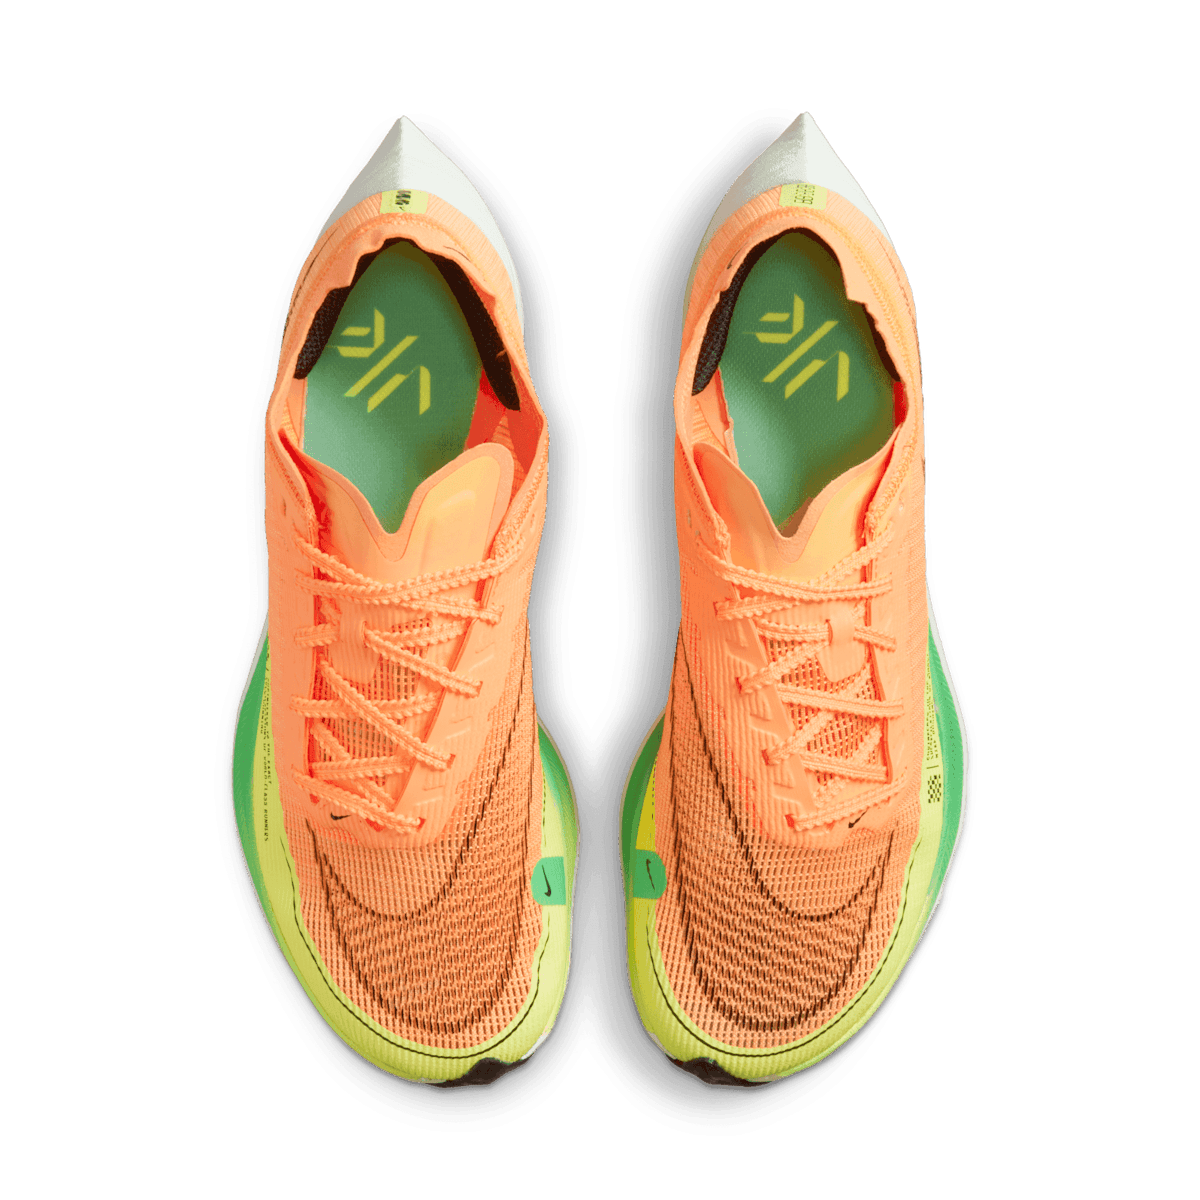 Nike ZoomX Vaporfly Next% 2 Peach Cream Green Shock (W) - CU4123